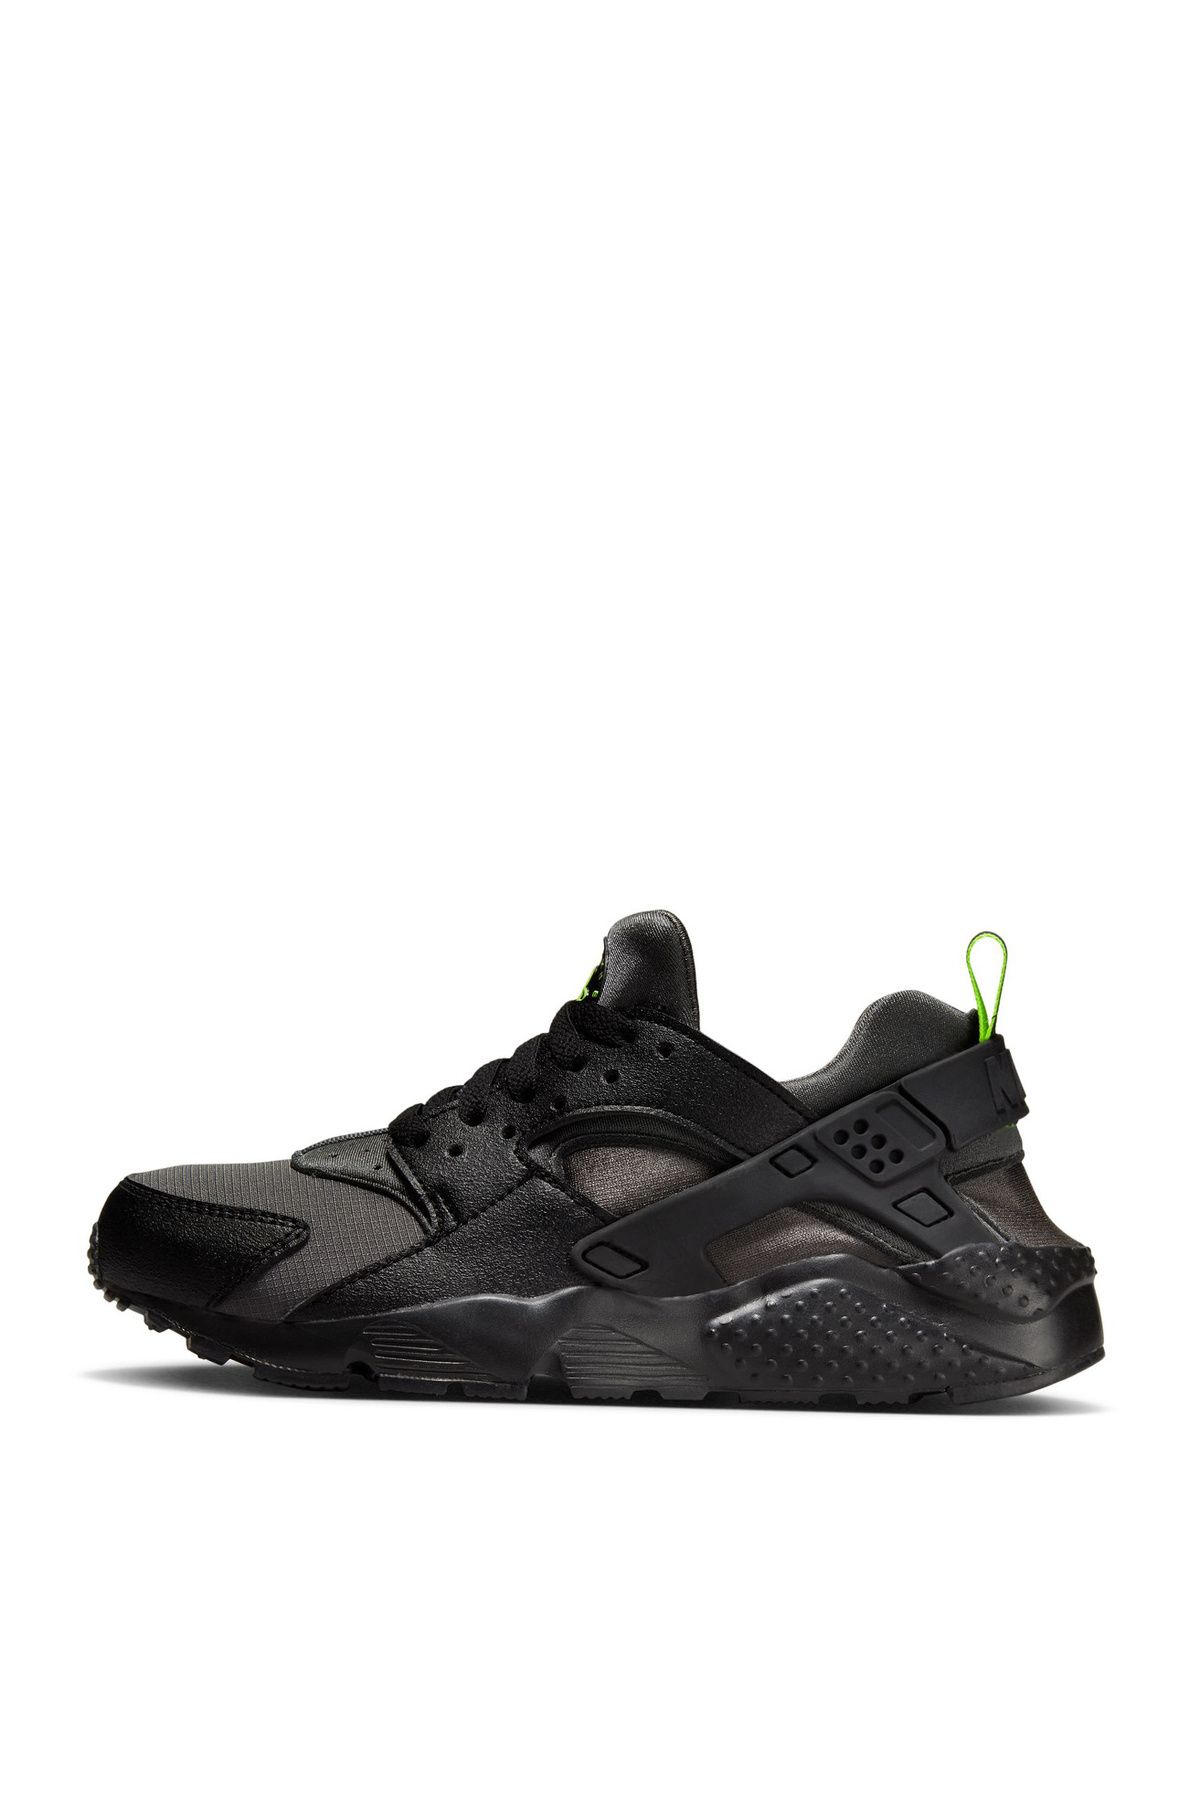 Nike Çocuk Siyah Yürüyüş Ayakkabısı DZ5632-001 NIKE HUARACHE RUN GS